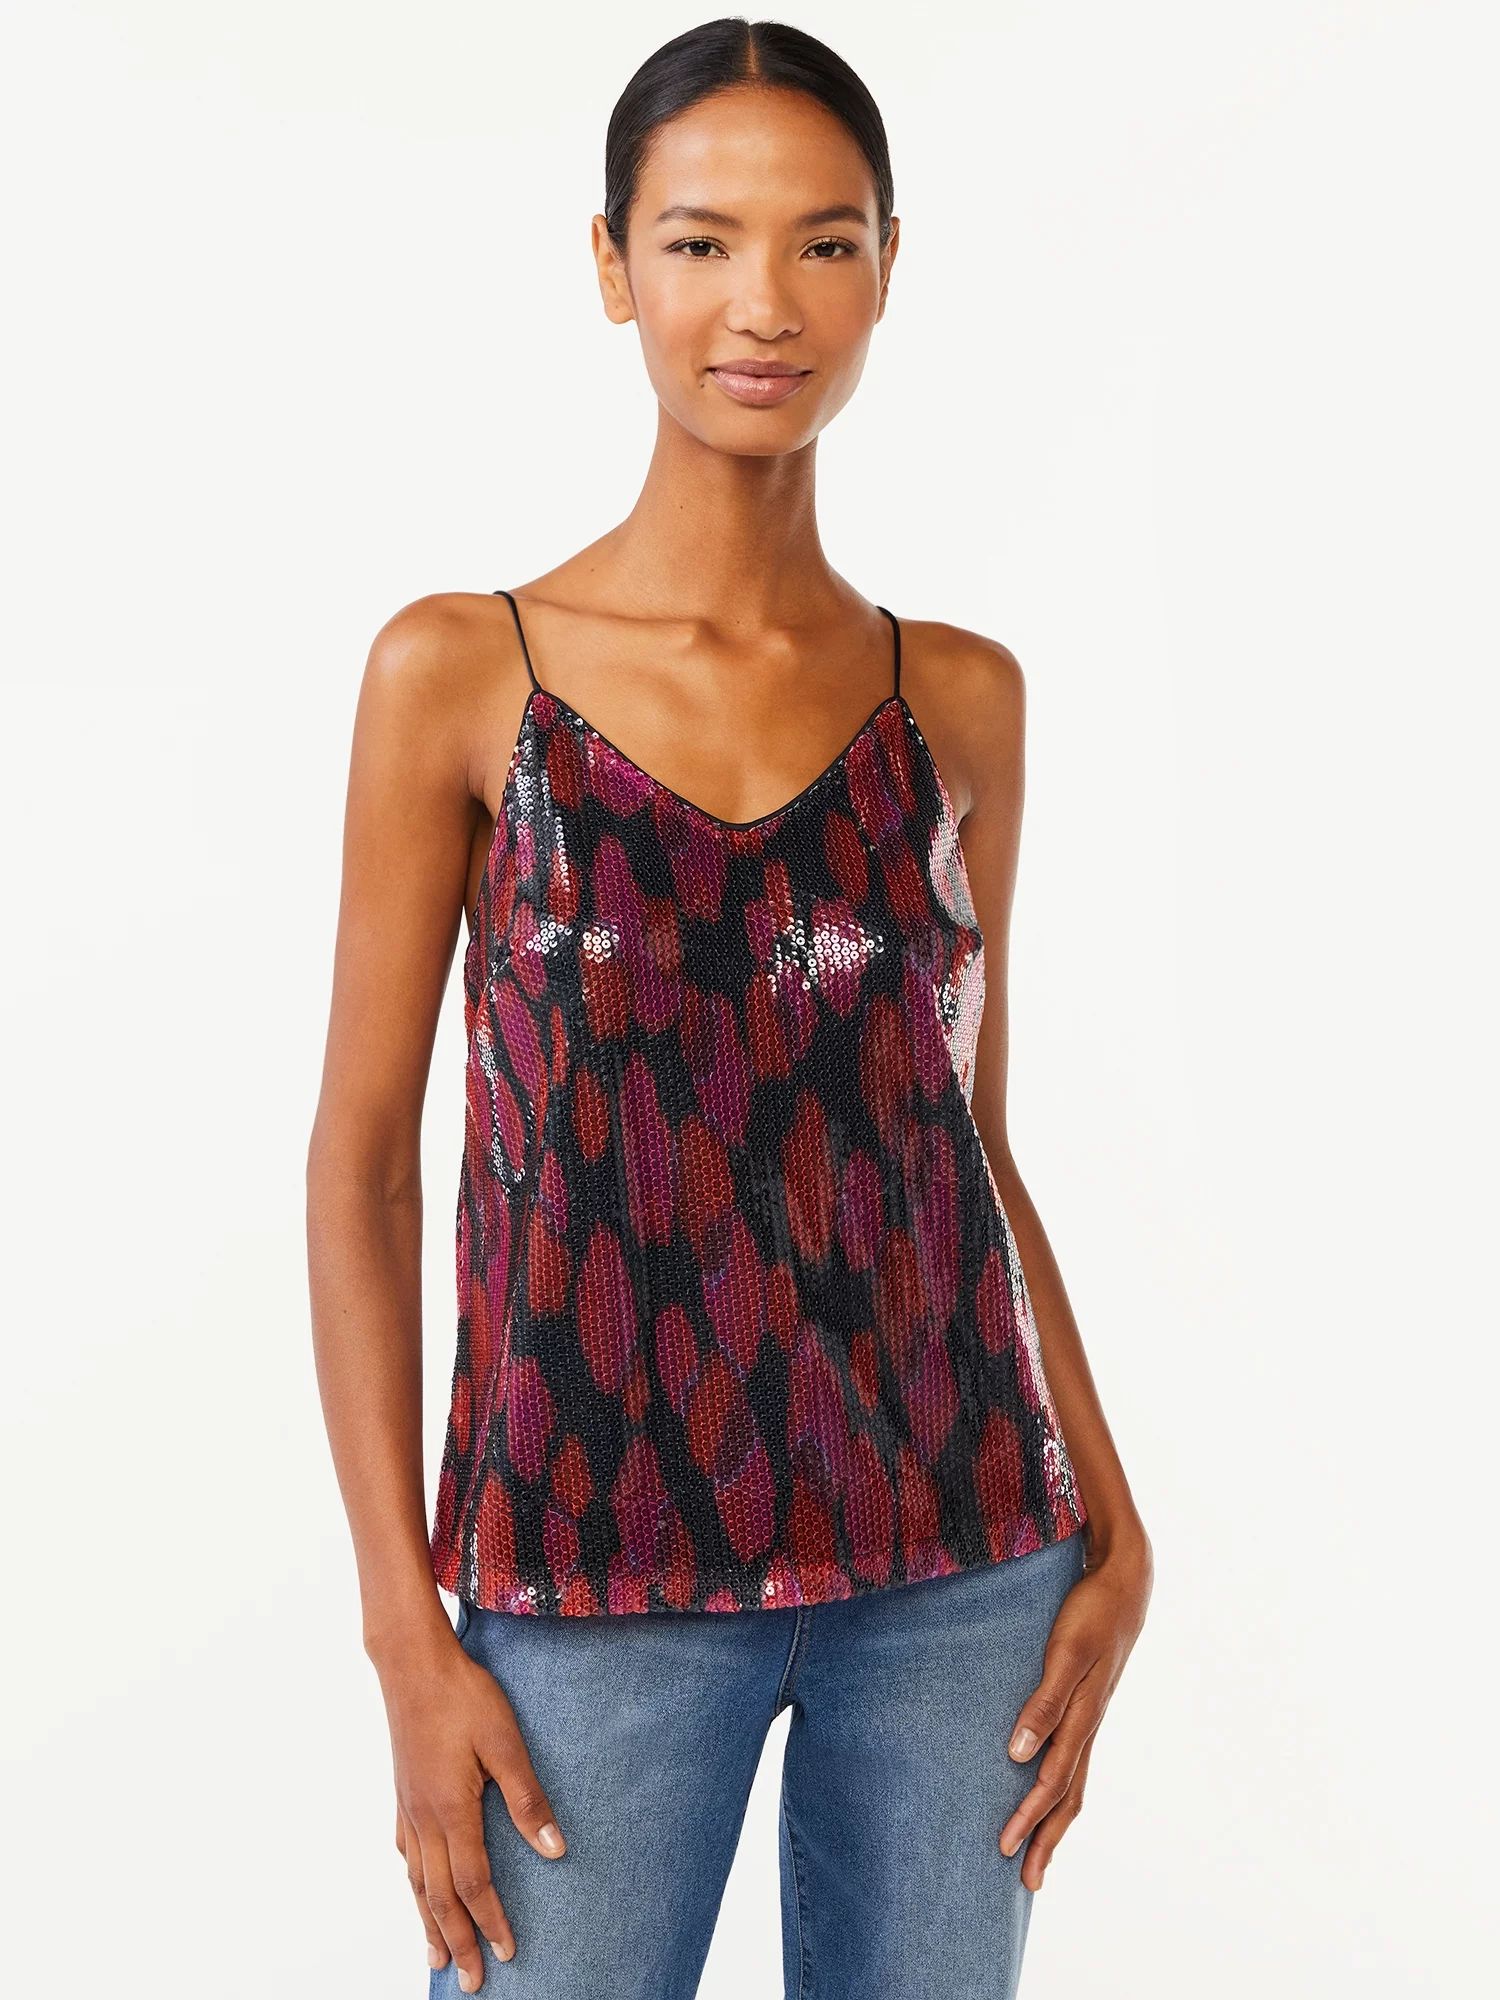 Scoop Women's Printed Sequin Cami Top | Walmart (US)